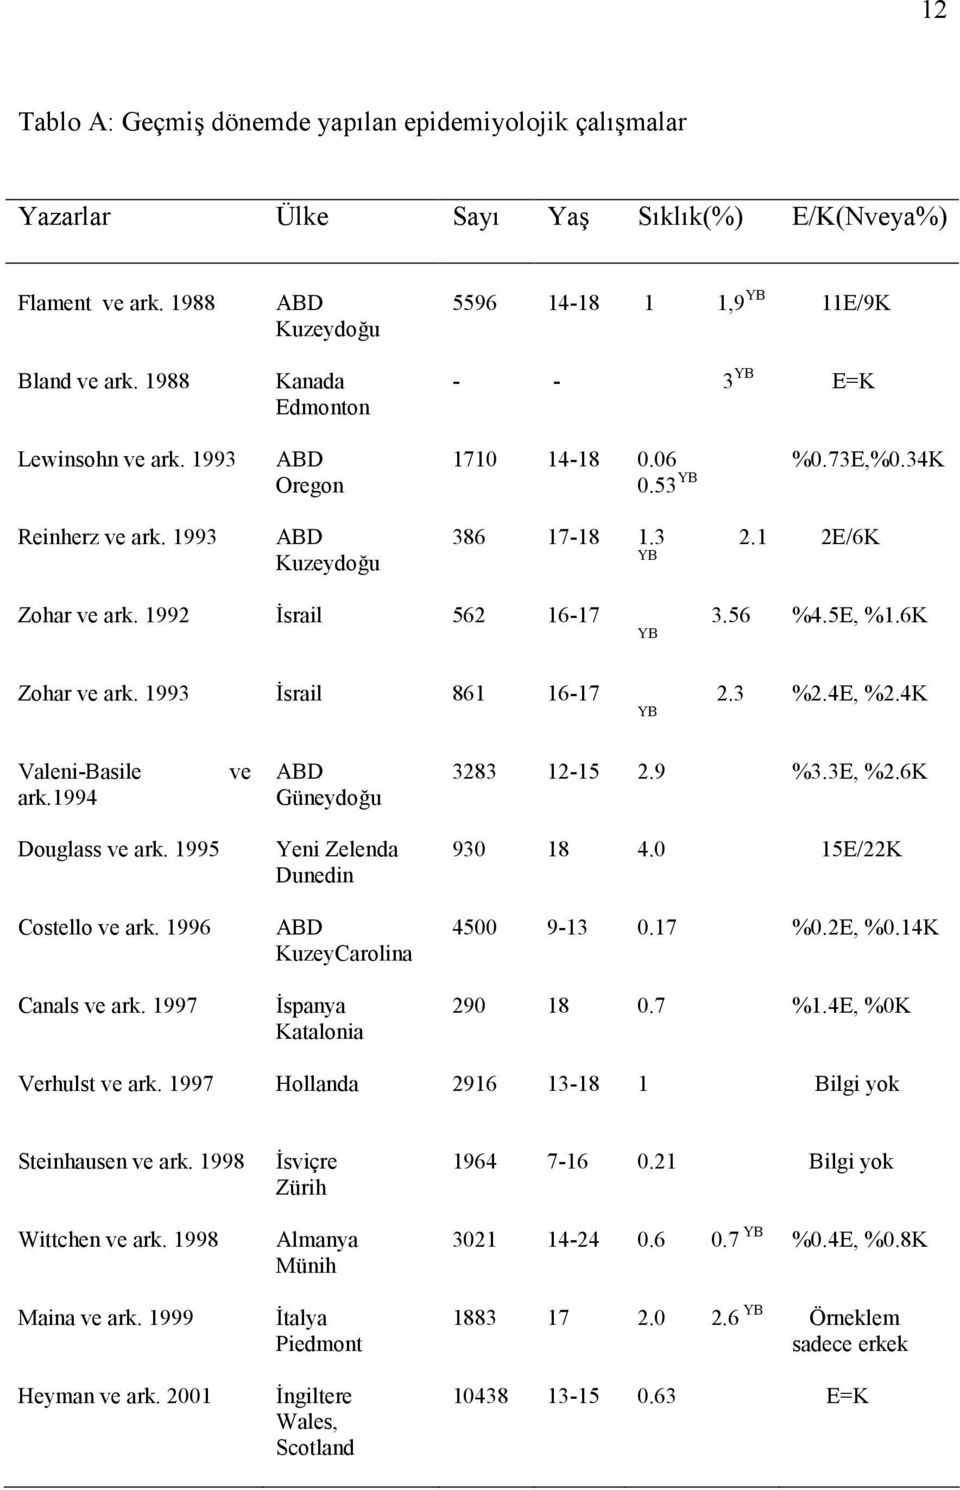 1992 Bsrail 562 16-17 3.56 YB Zohar ve ark. 1993 Bsrail 861 16-17 2.3 YB %4.5E, %1.6K %2.4E, %2.4K Valeni-Basile ark.1994 ve ABD Güneydo"u 3283 12-15 2.9 %3.3E, %2.6K Douglass ve ark.